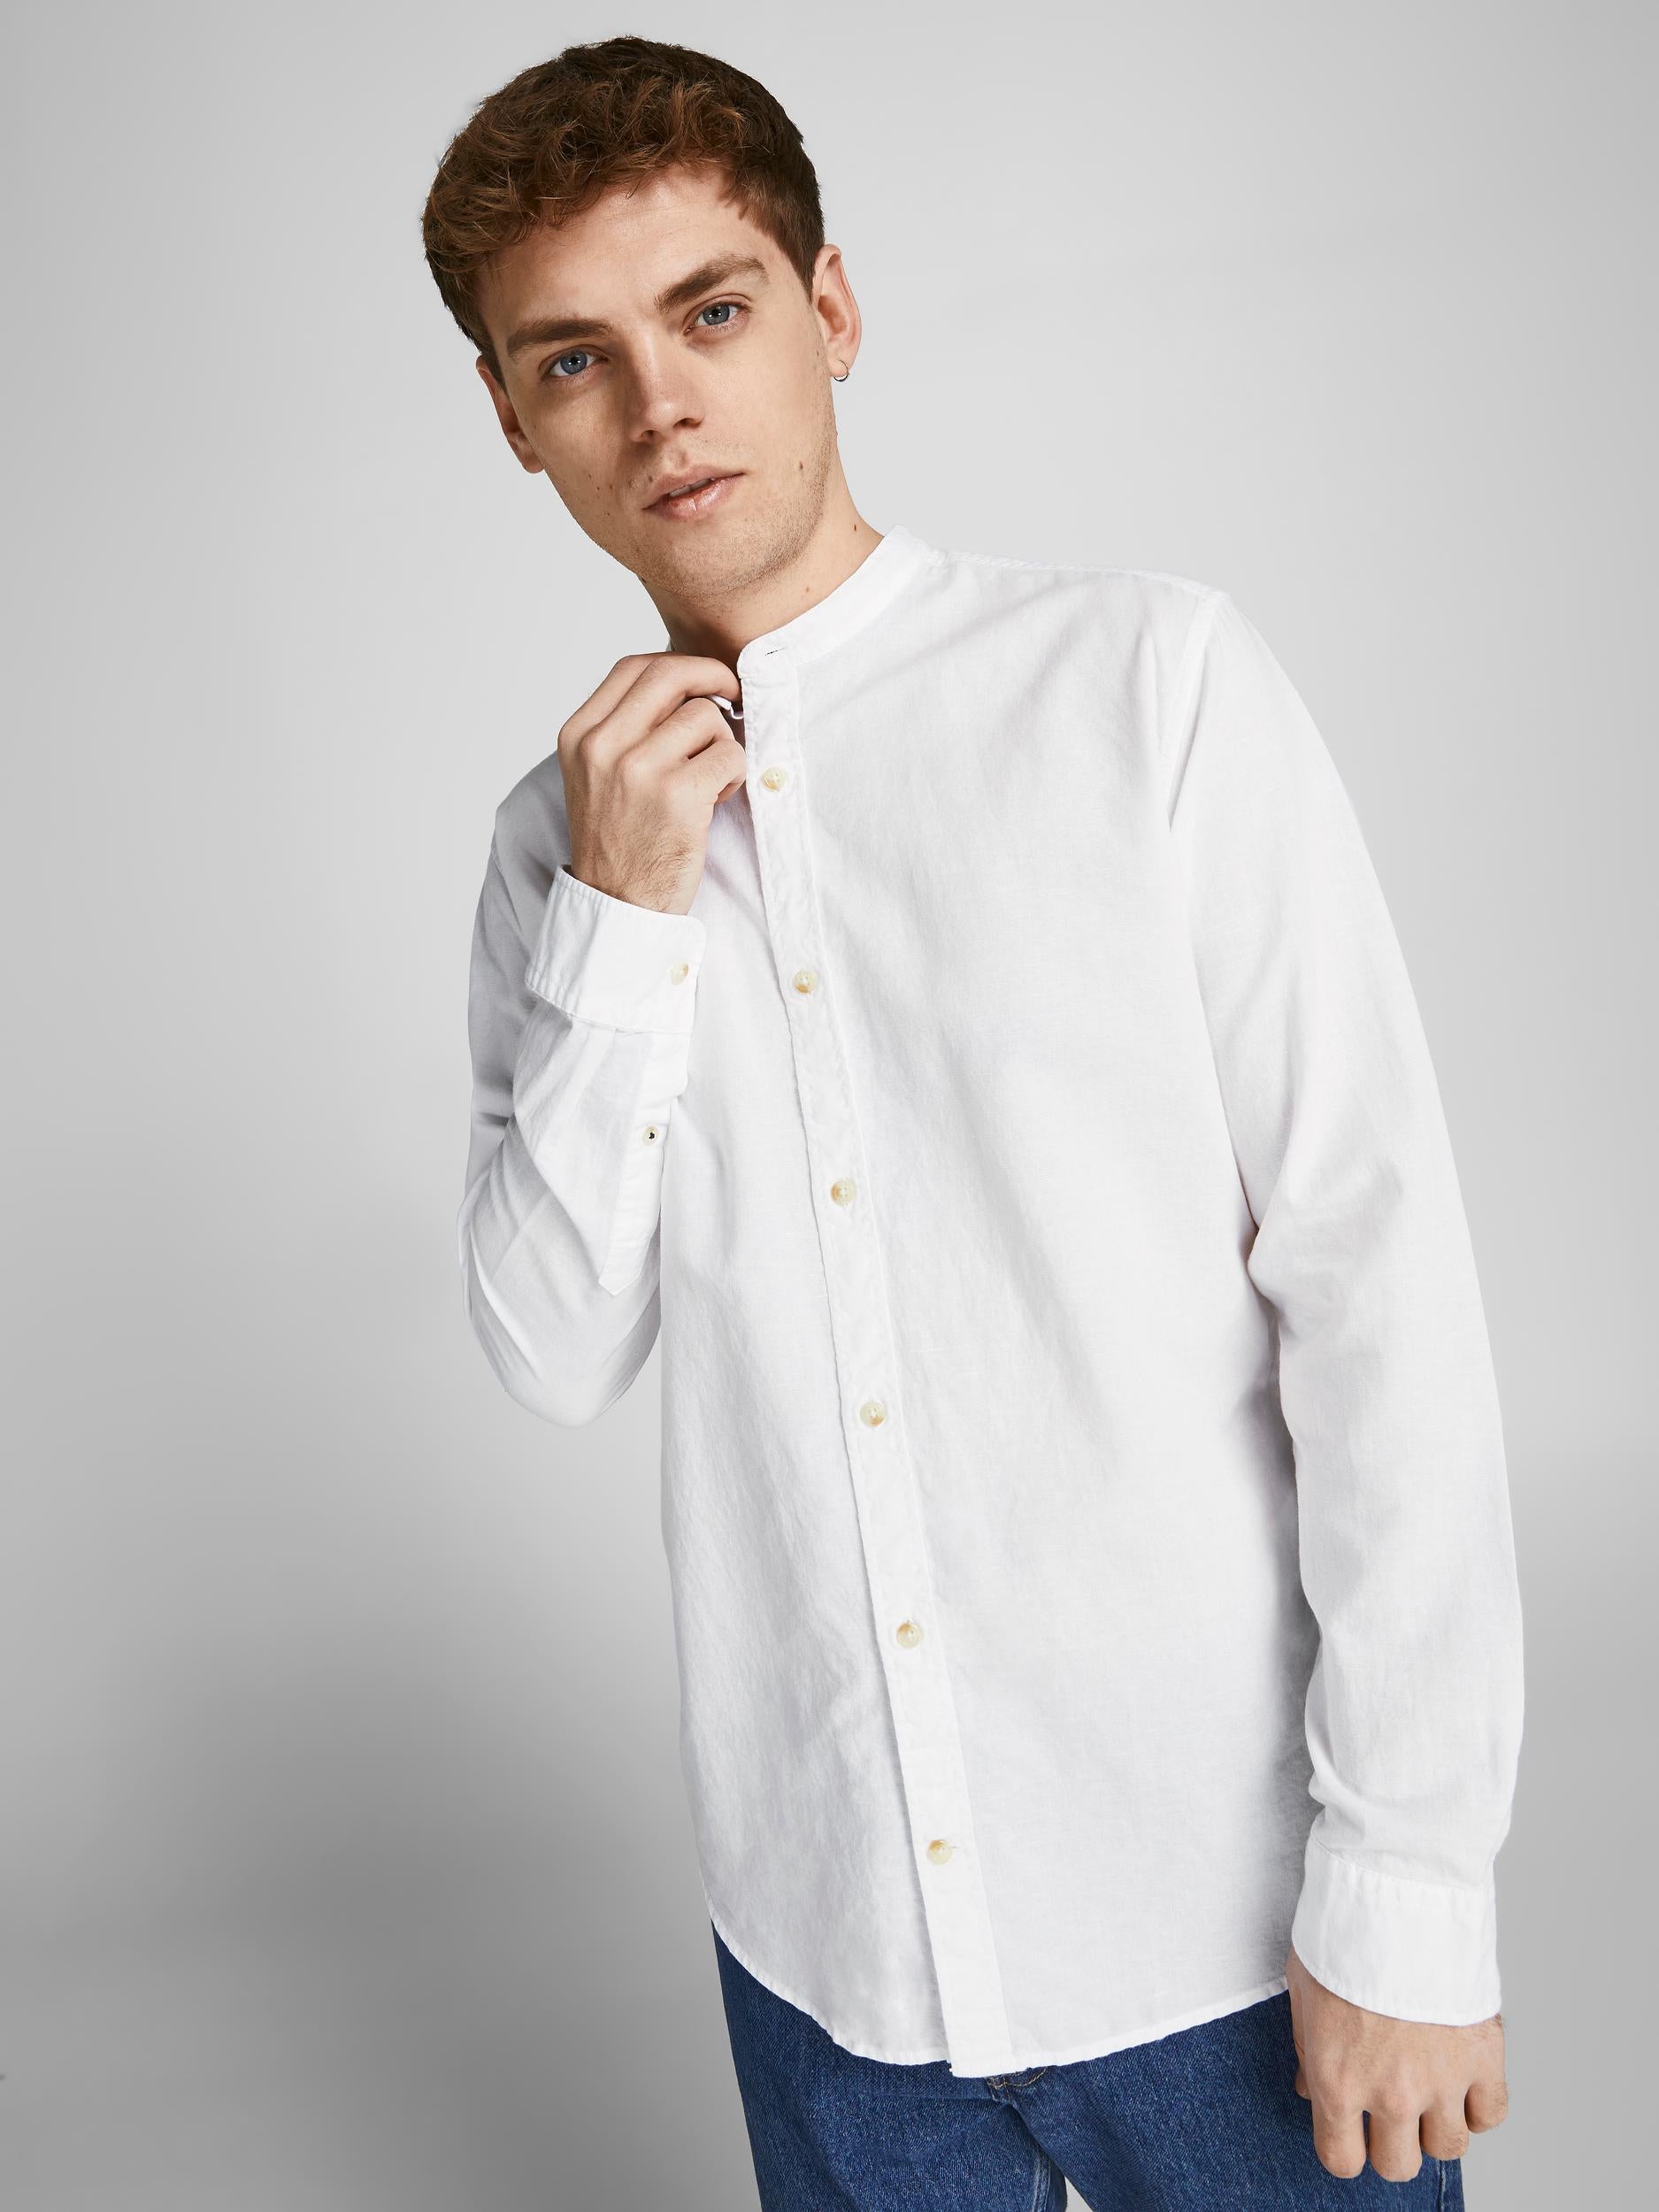 Jack&amp;Jones white long-sleeved shirt, mandarin collar